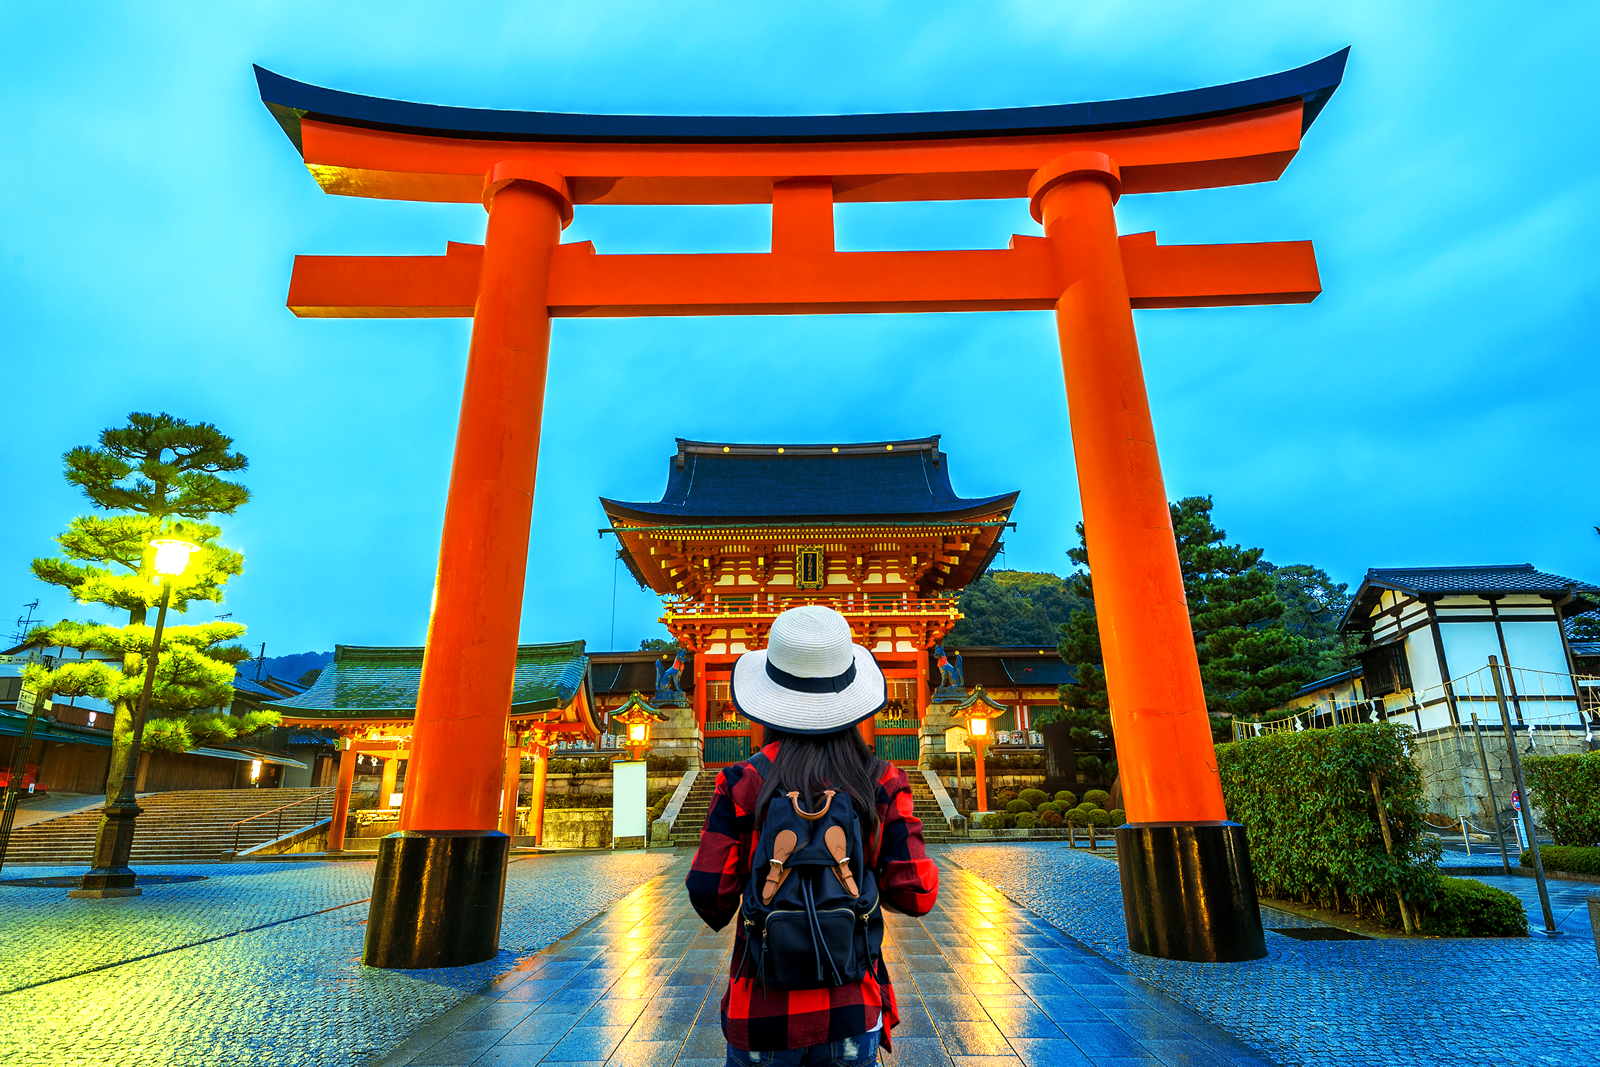 Visto de turismo para o Japão